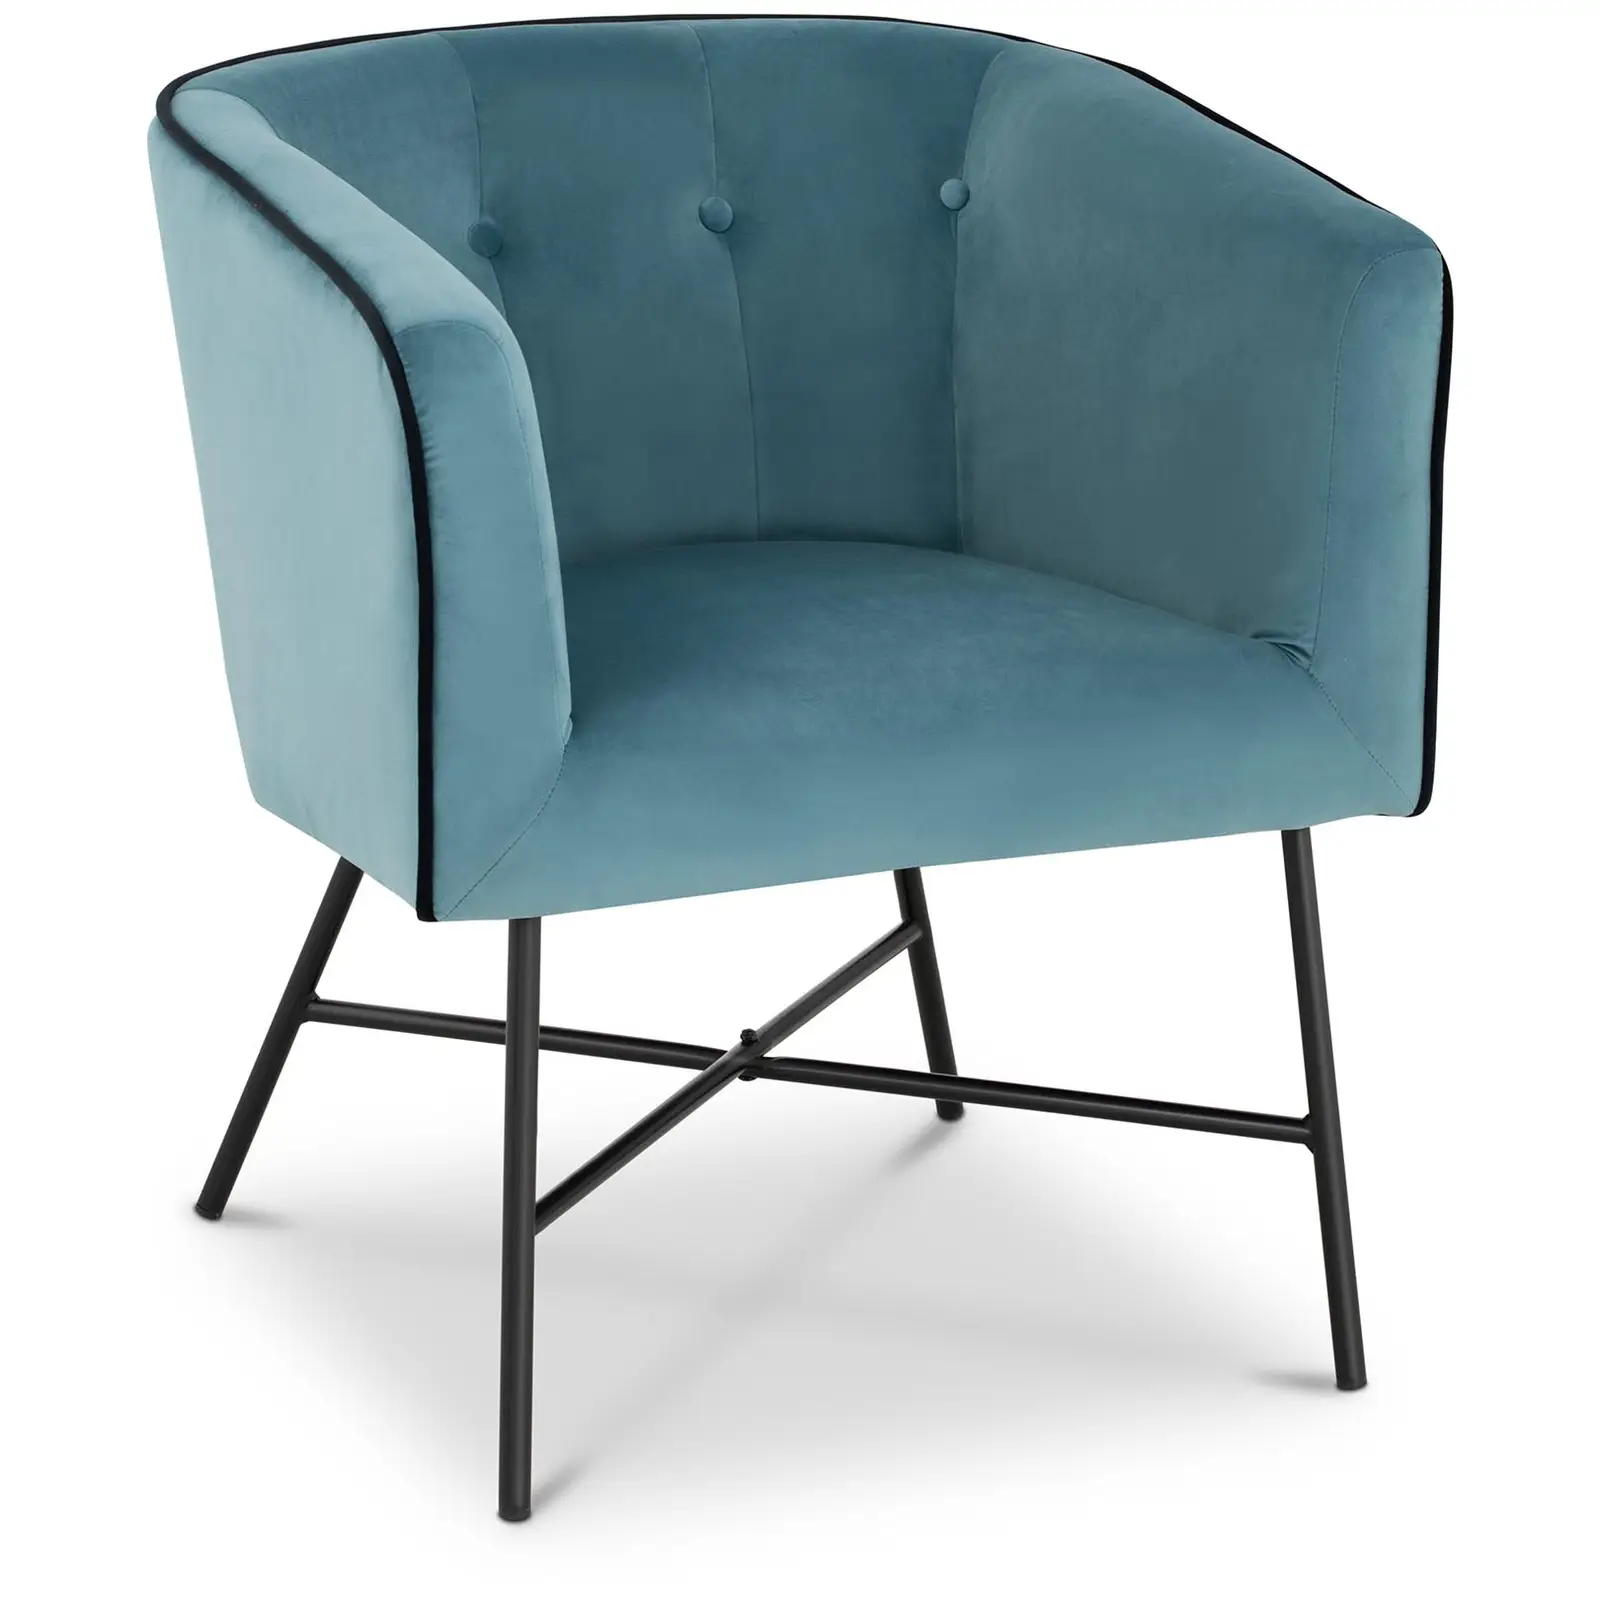 B-zboží Čalouněná židle - do 160 kg - sedací plocha 48 x 41,5 cm - černá